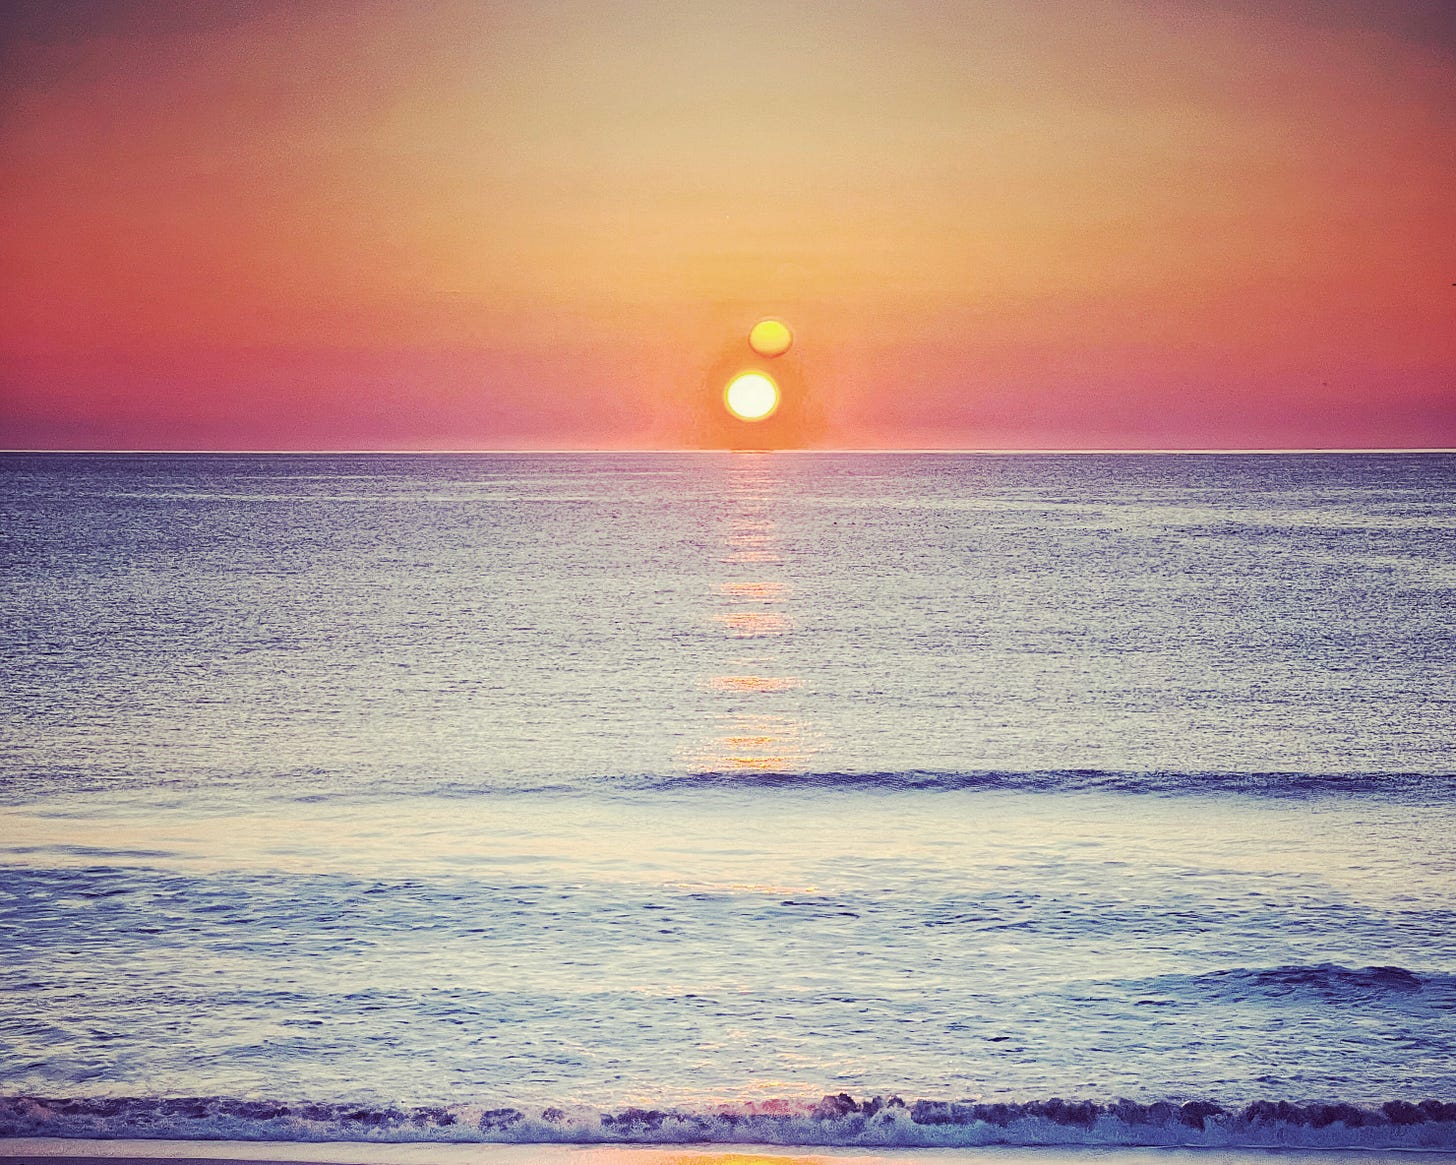 Sunset over a calm ocean 